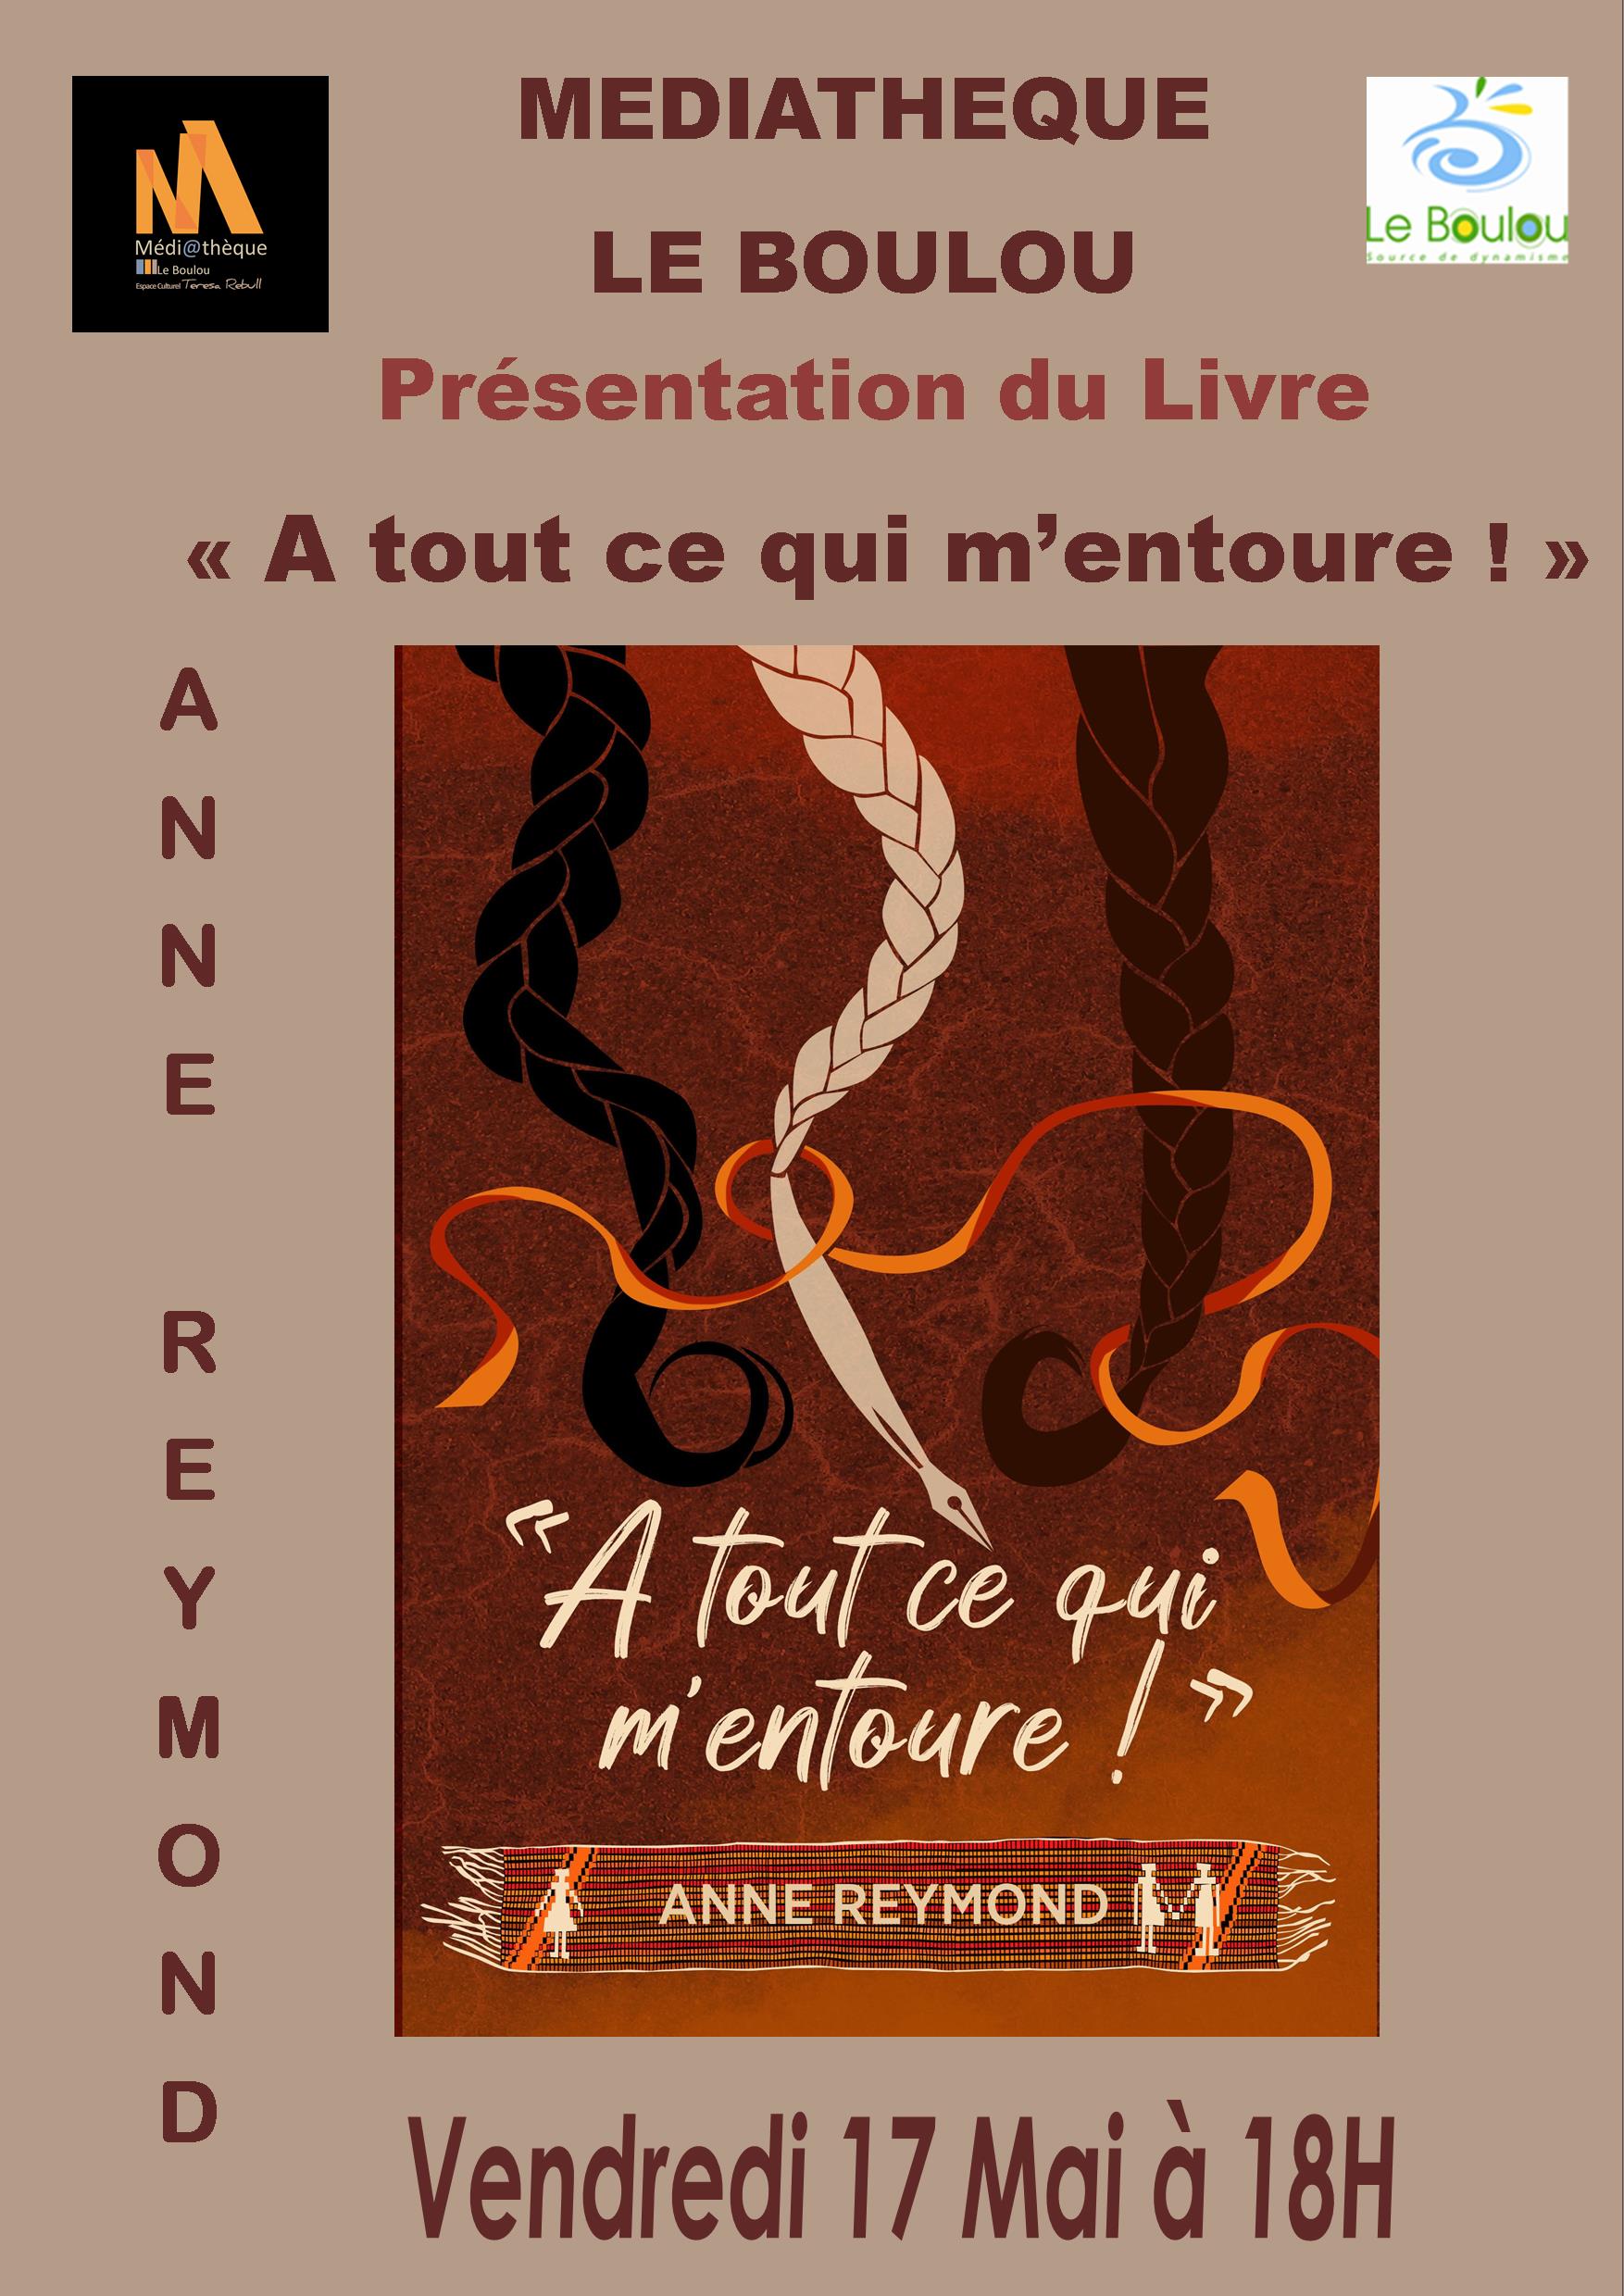 PRÉSENTATION DE LIVRE "À TOUT CE QUI M’ENTOURE !" ANNE REYMOND MÉDIATHÈQUE LE BOULOU